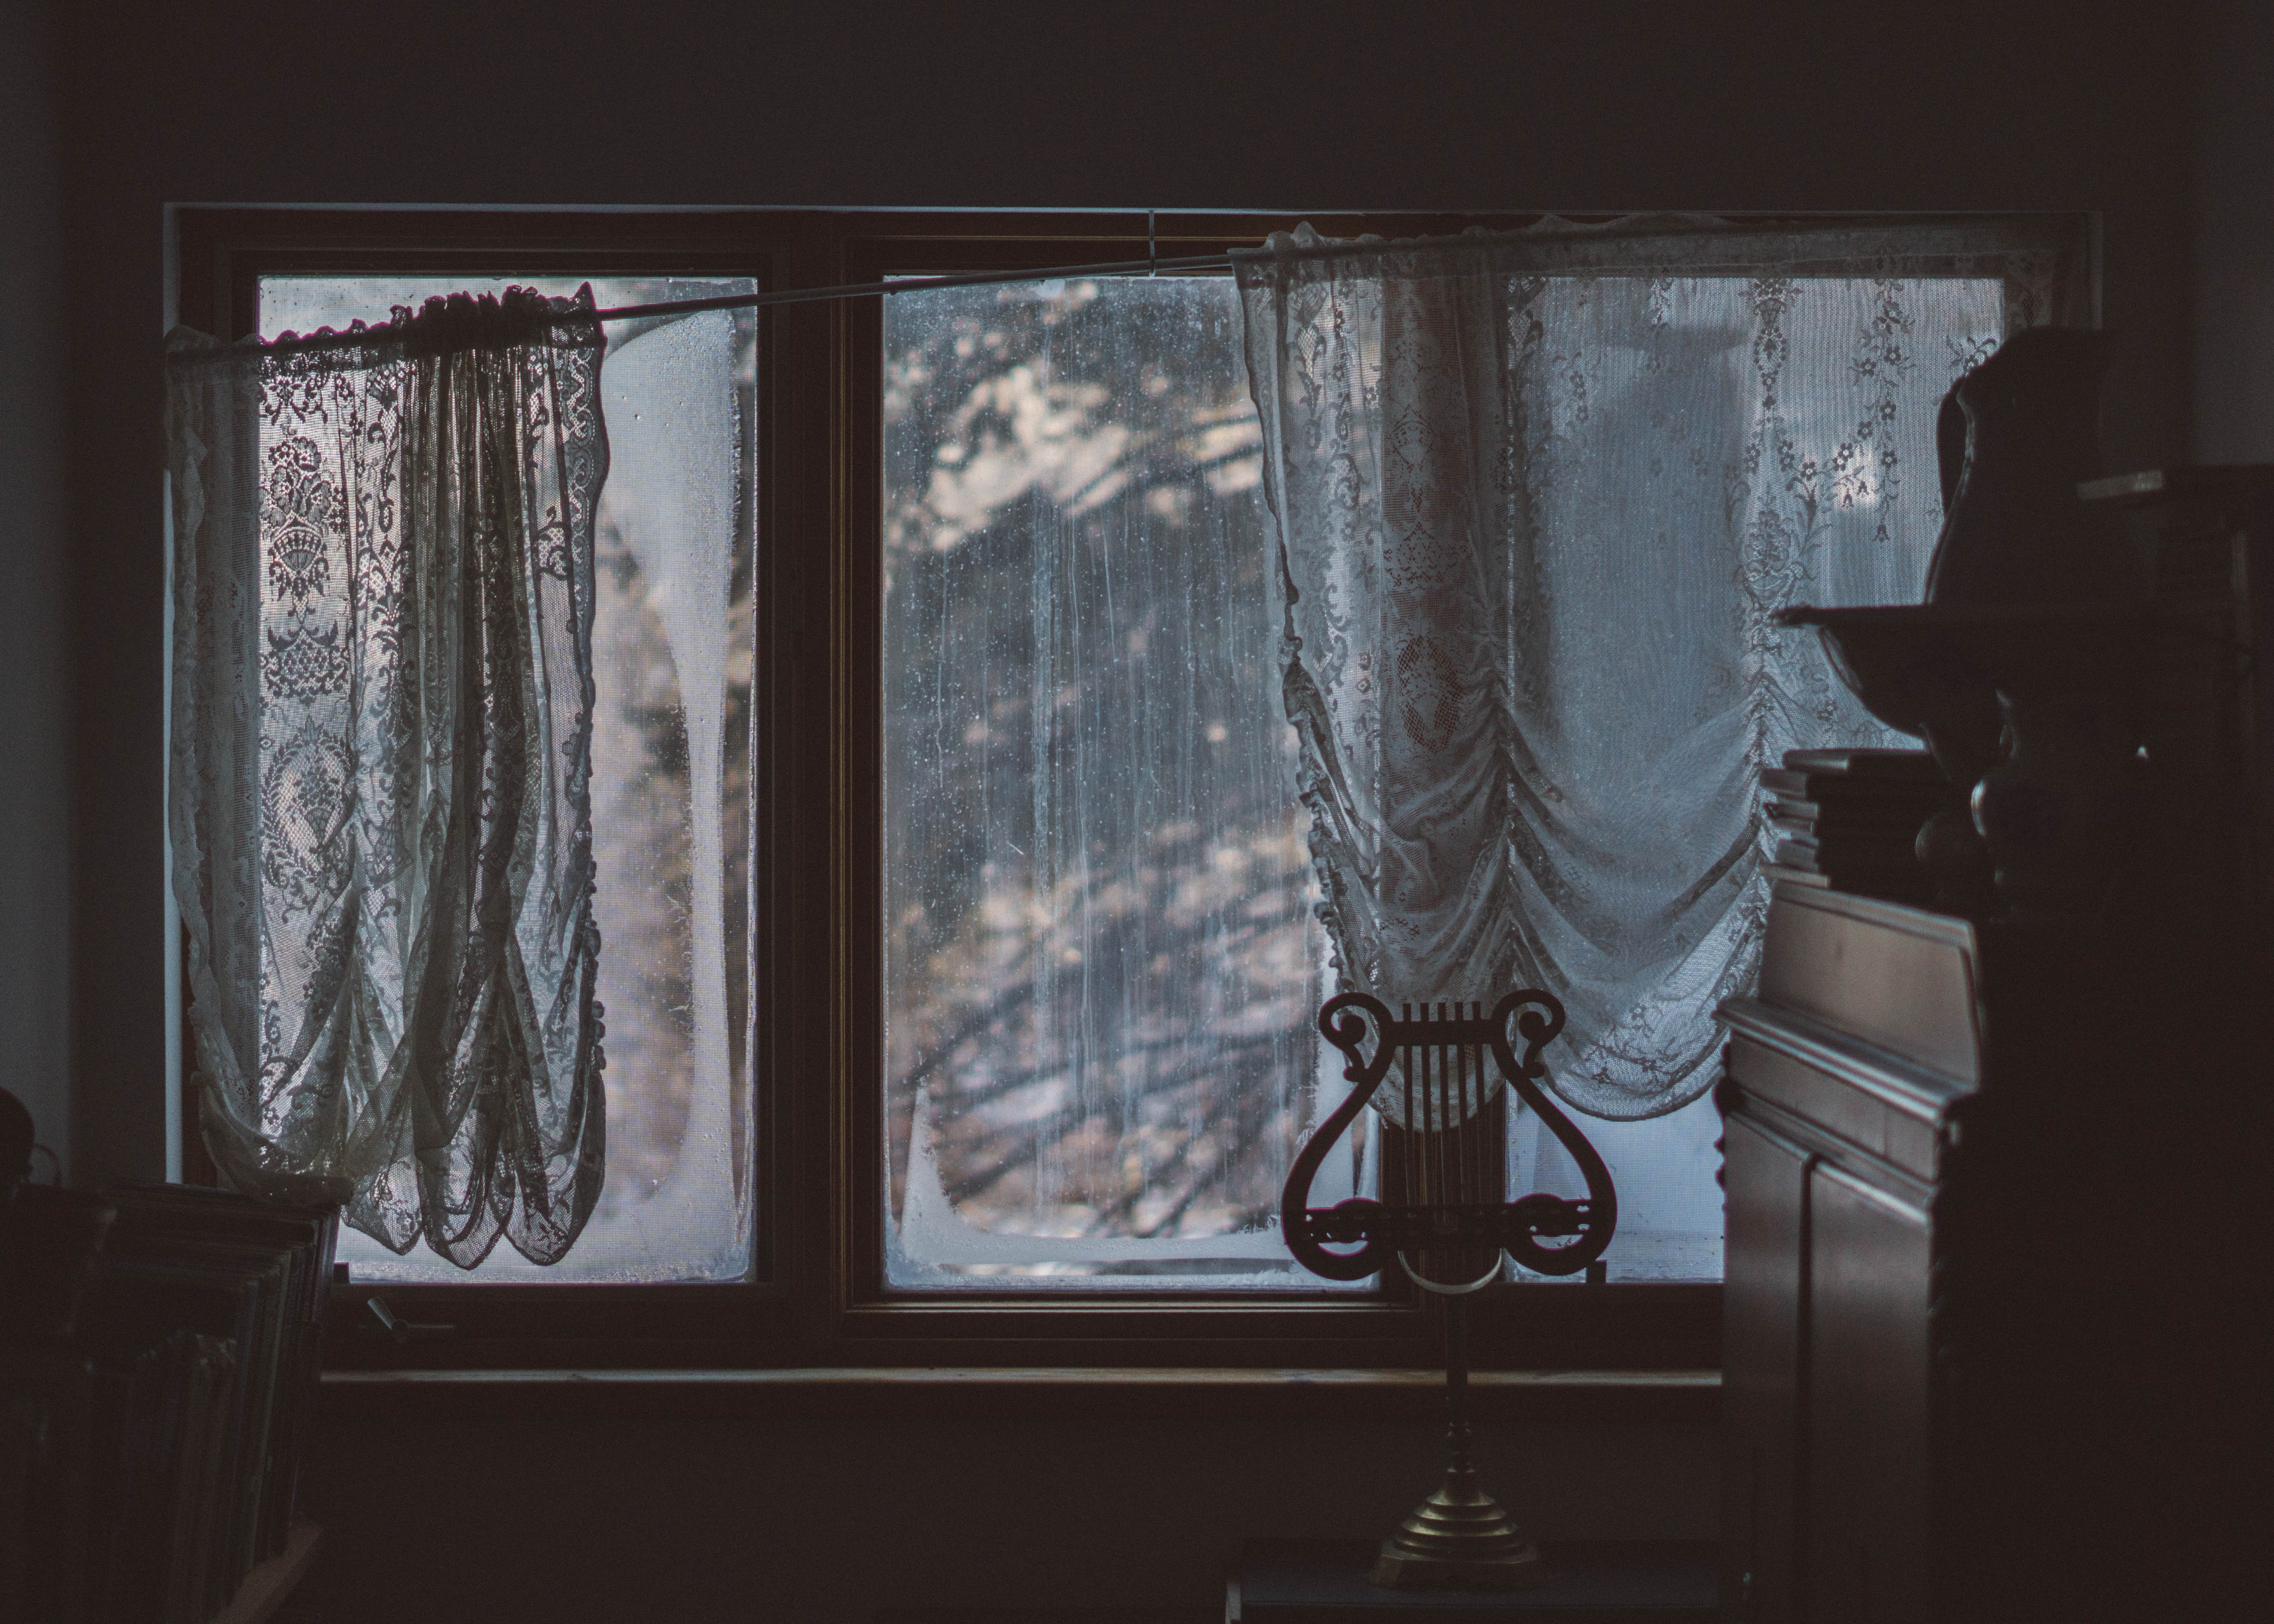 Ventanas con cortinas de encajes en un salón. | Foto: Unsplash